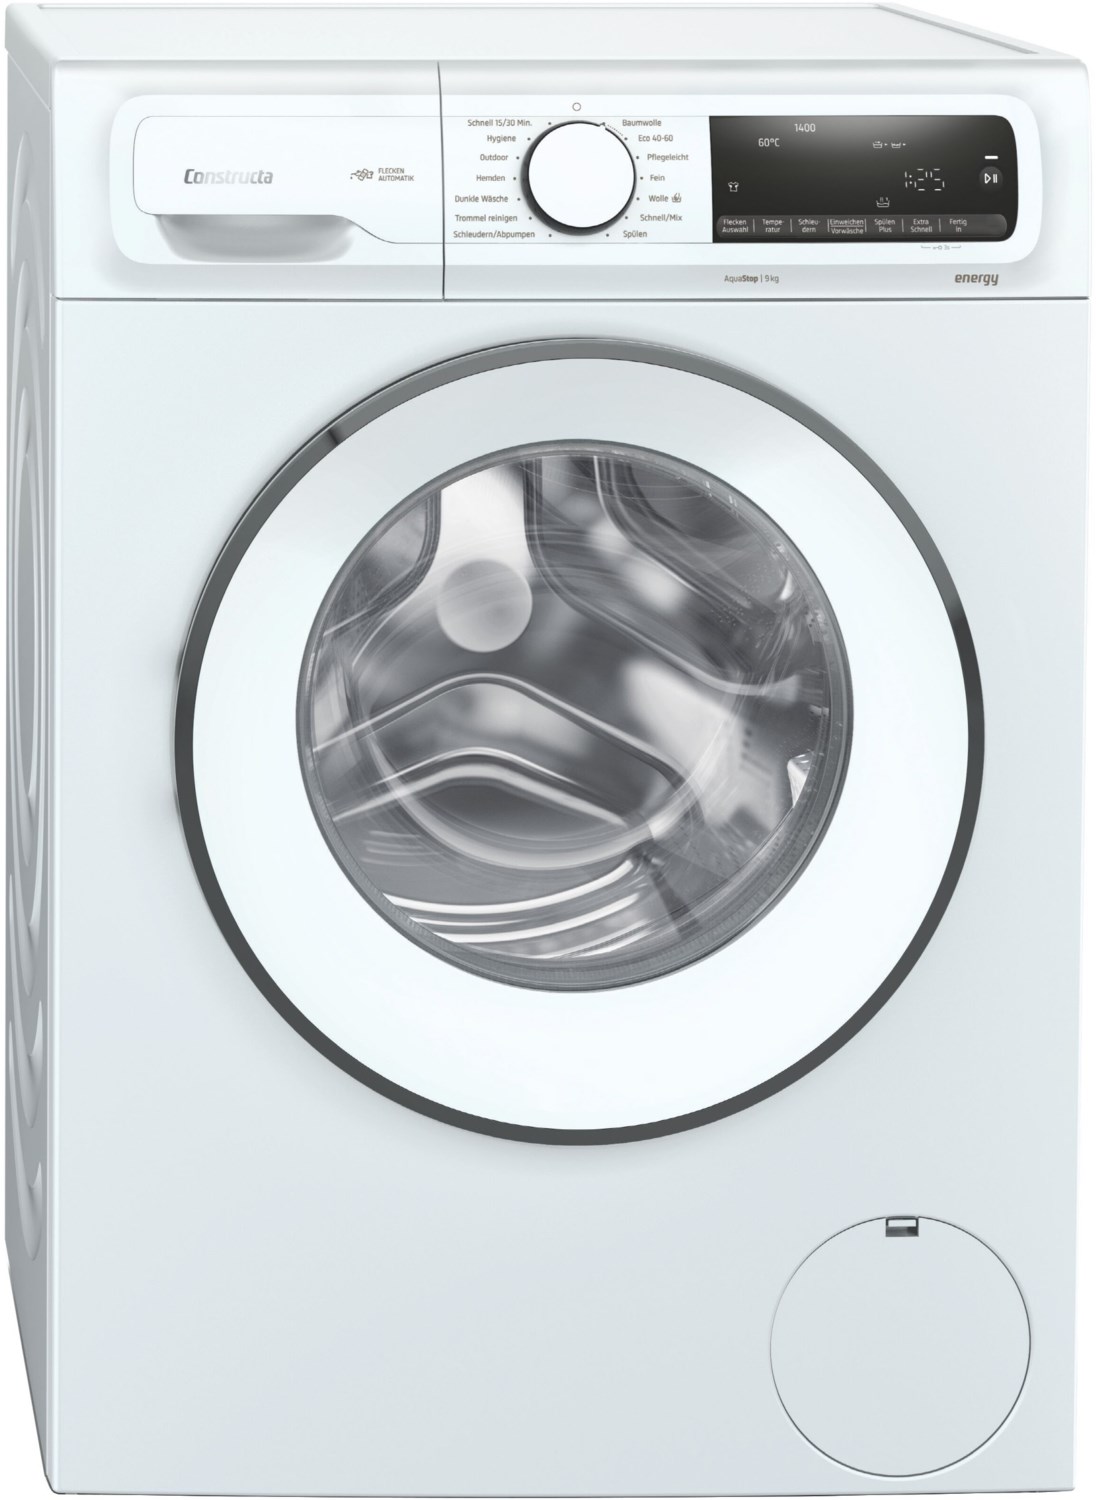 CWF14G100 Stand-Waschmaschine-Frontlader weiß / A